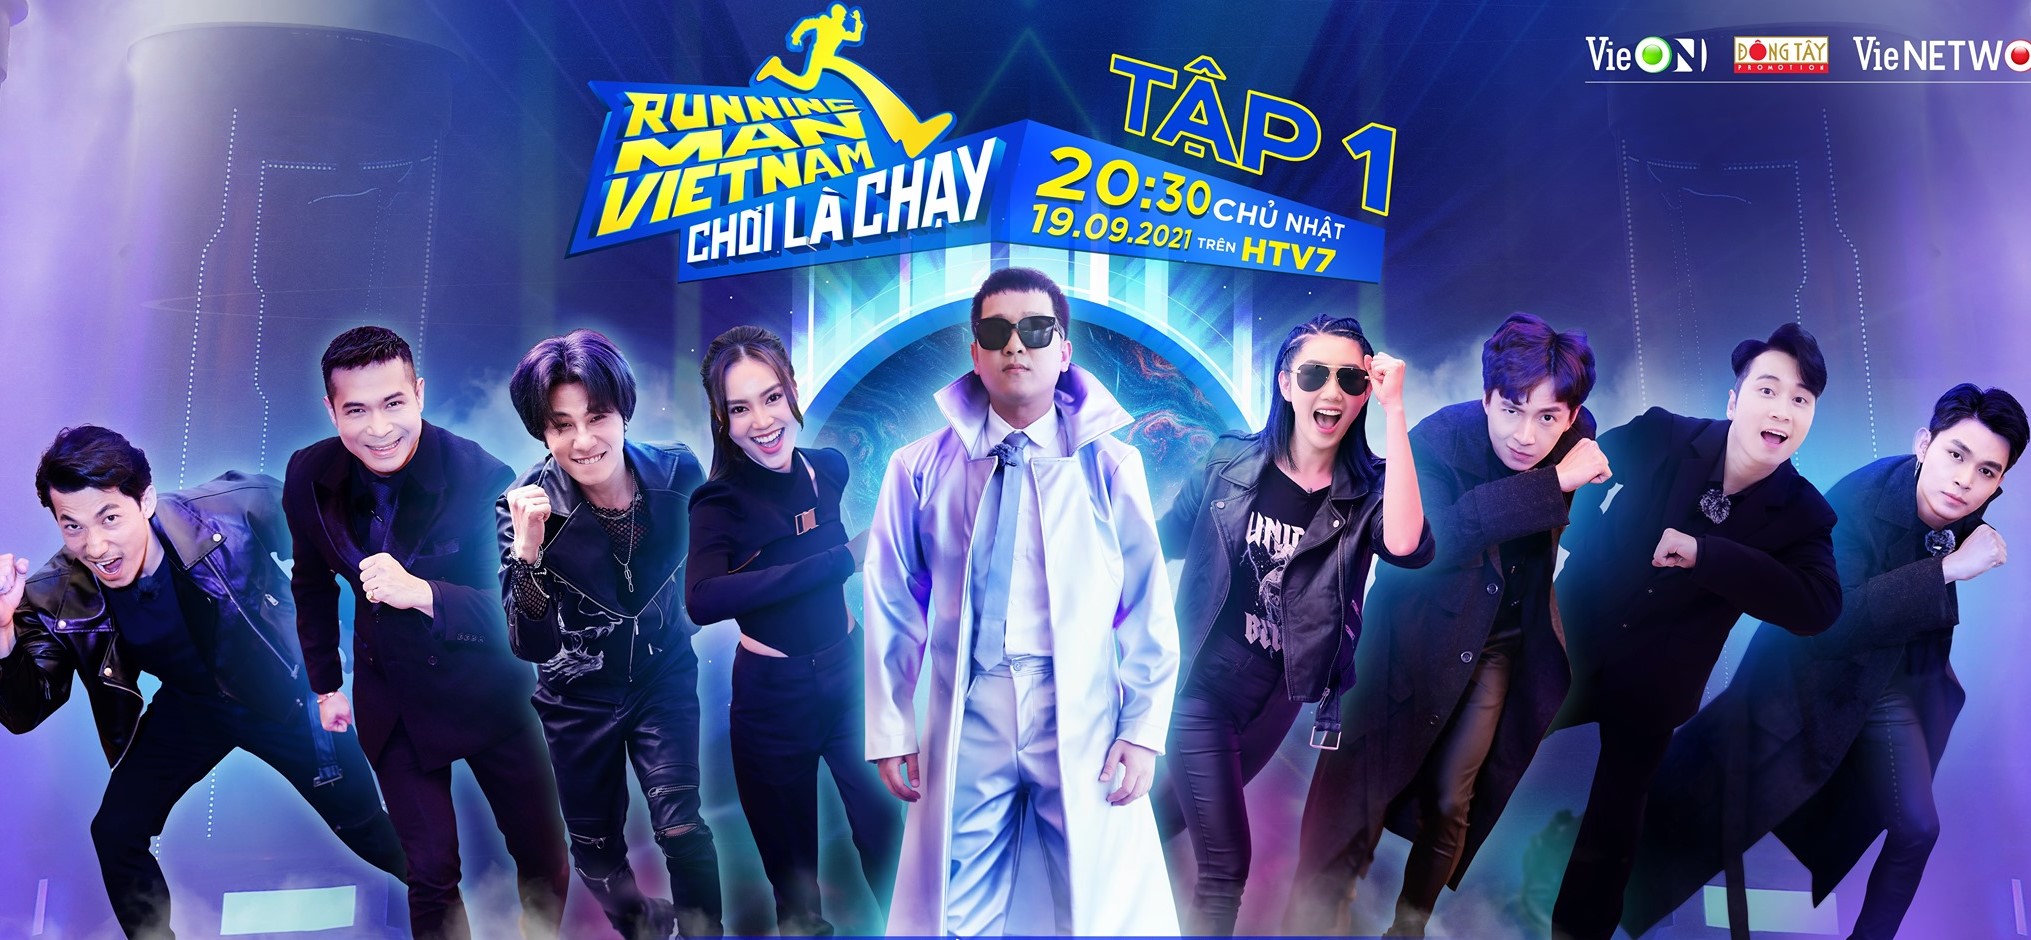 Gameshow truyền hình thực tế đình đám Running Man Việt Nam đã trở lại vào mùa thu năm nay với sự góp mặt của dàn cast 9 thành viên chính.